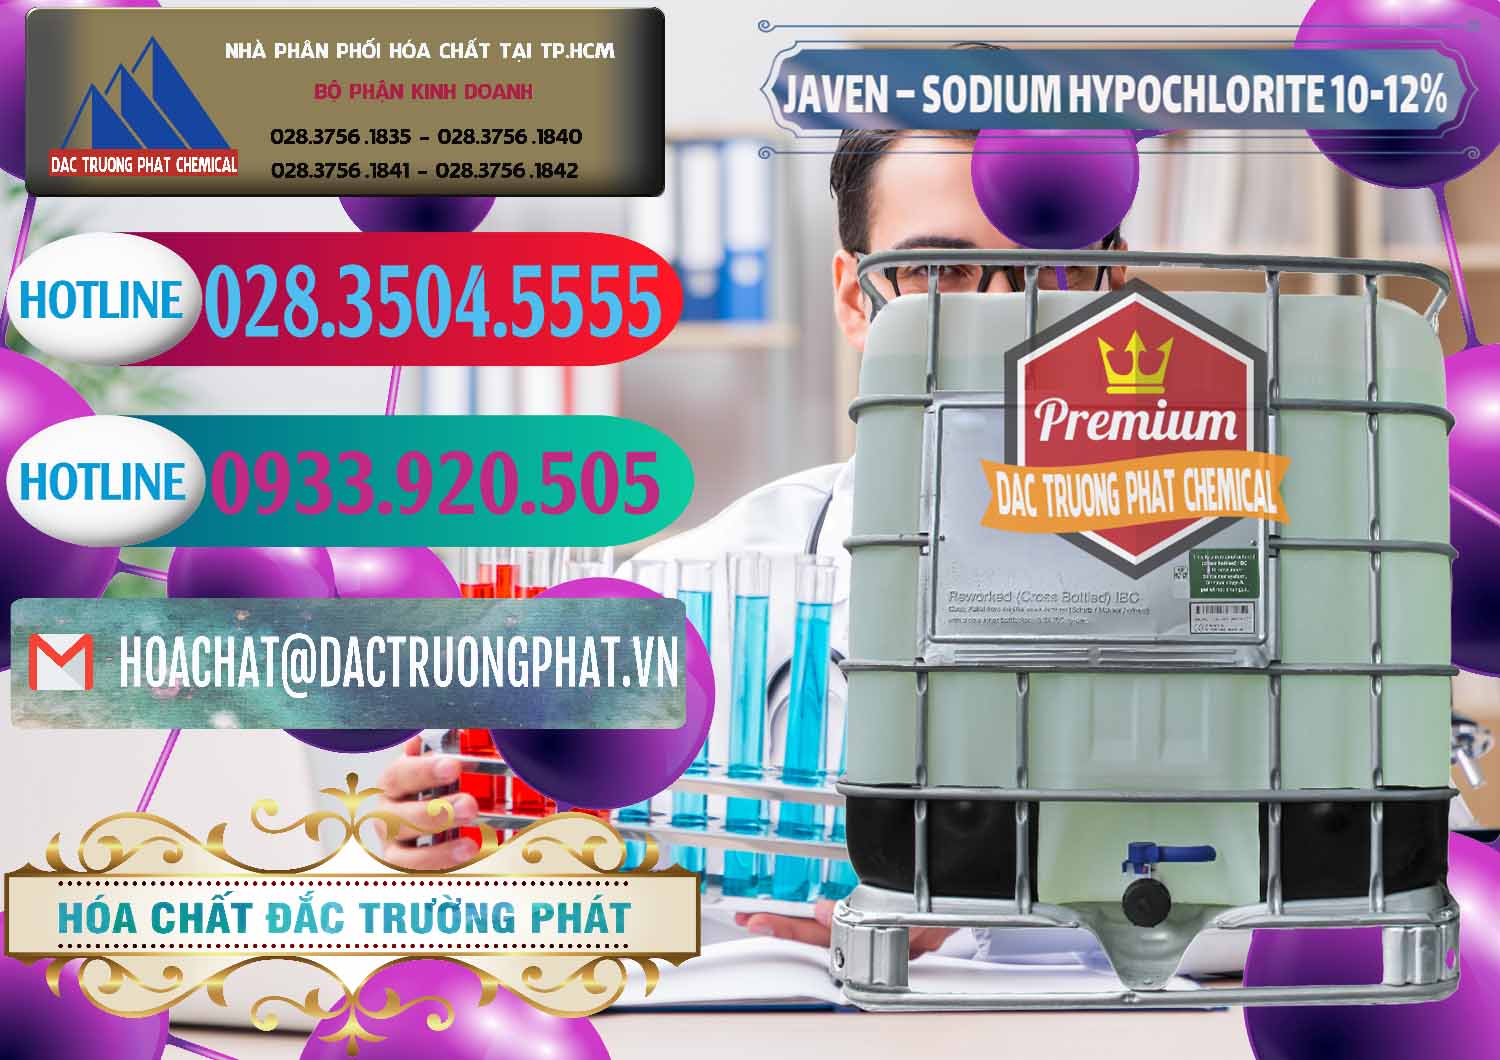 Nơi phân phối - cung ứng Javen - Sodium Hypochlorite 10-12% Việt Nam - 0188 - Nơi bán _ phân phối hóa chất tại TP.HCM - truongphat.vn